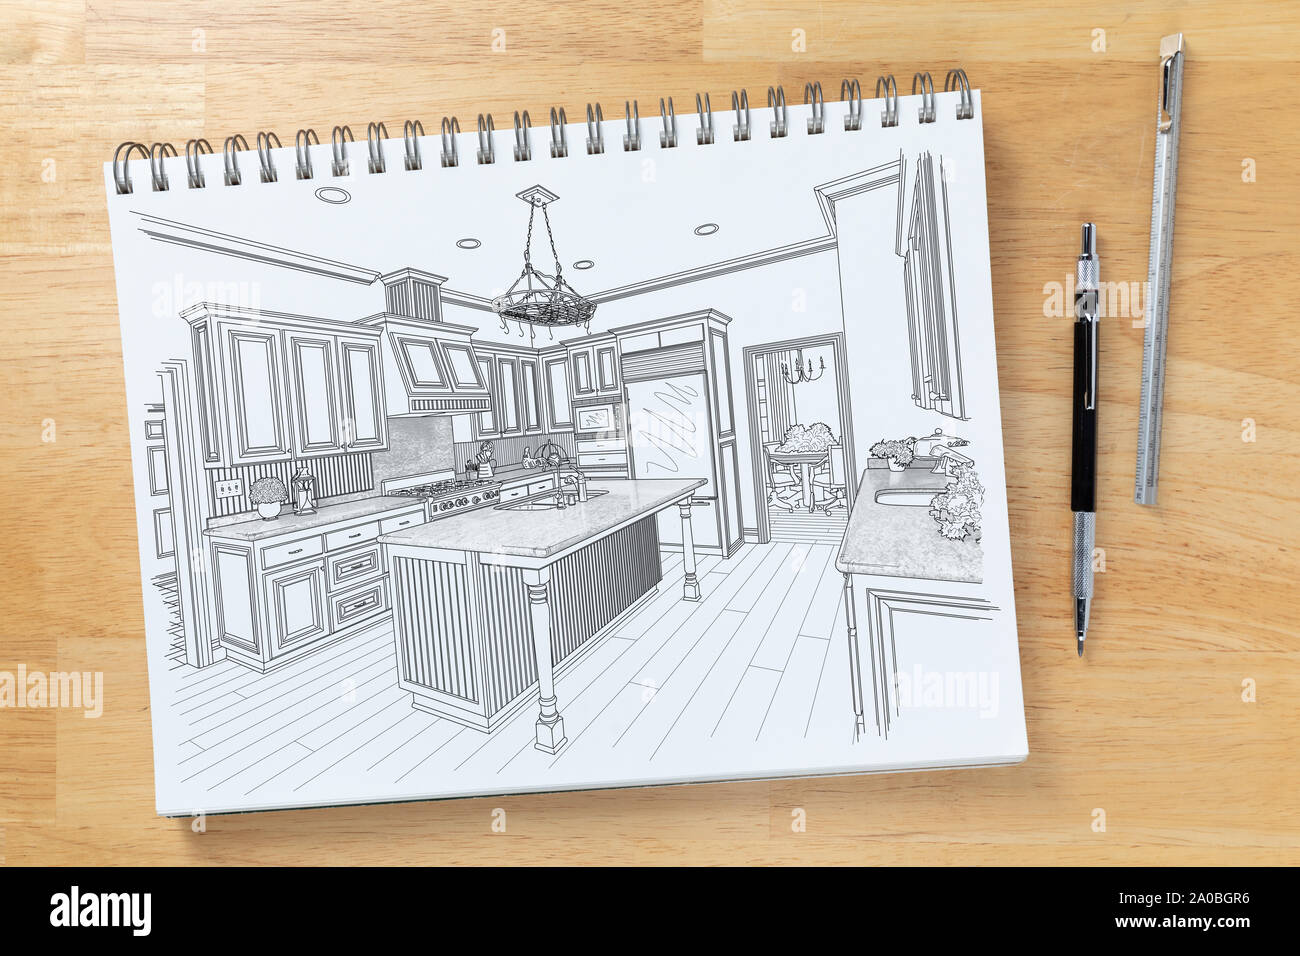 12 Best Interior Design Sketchbooks ideas | interior design sketchbooks, sketch  book, design